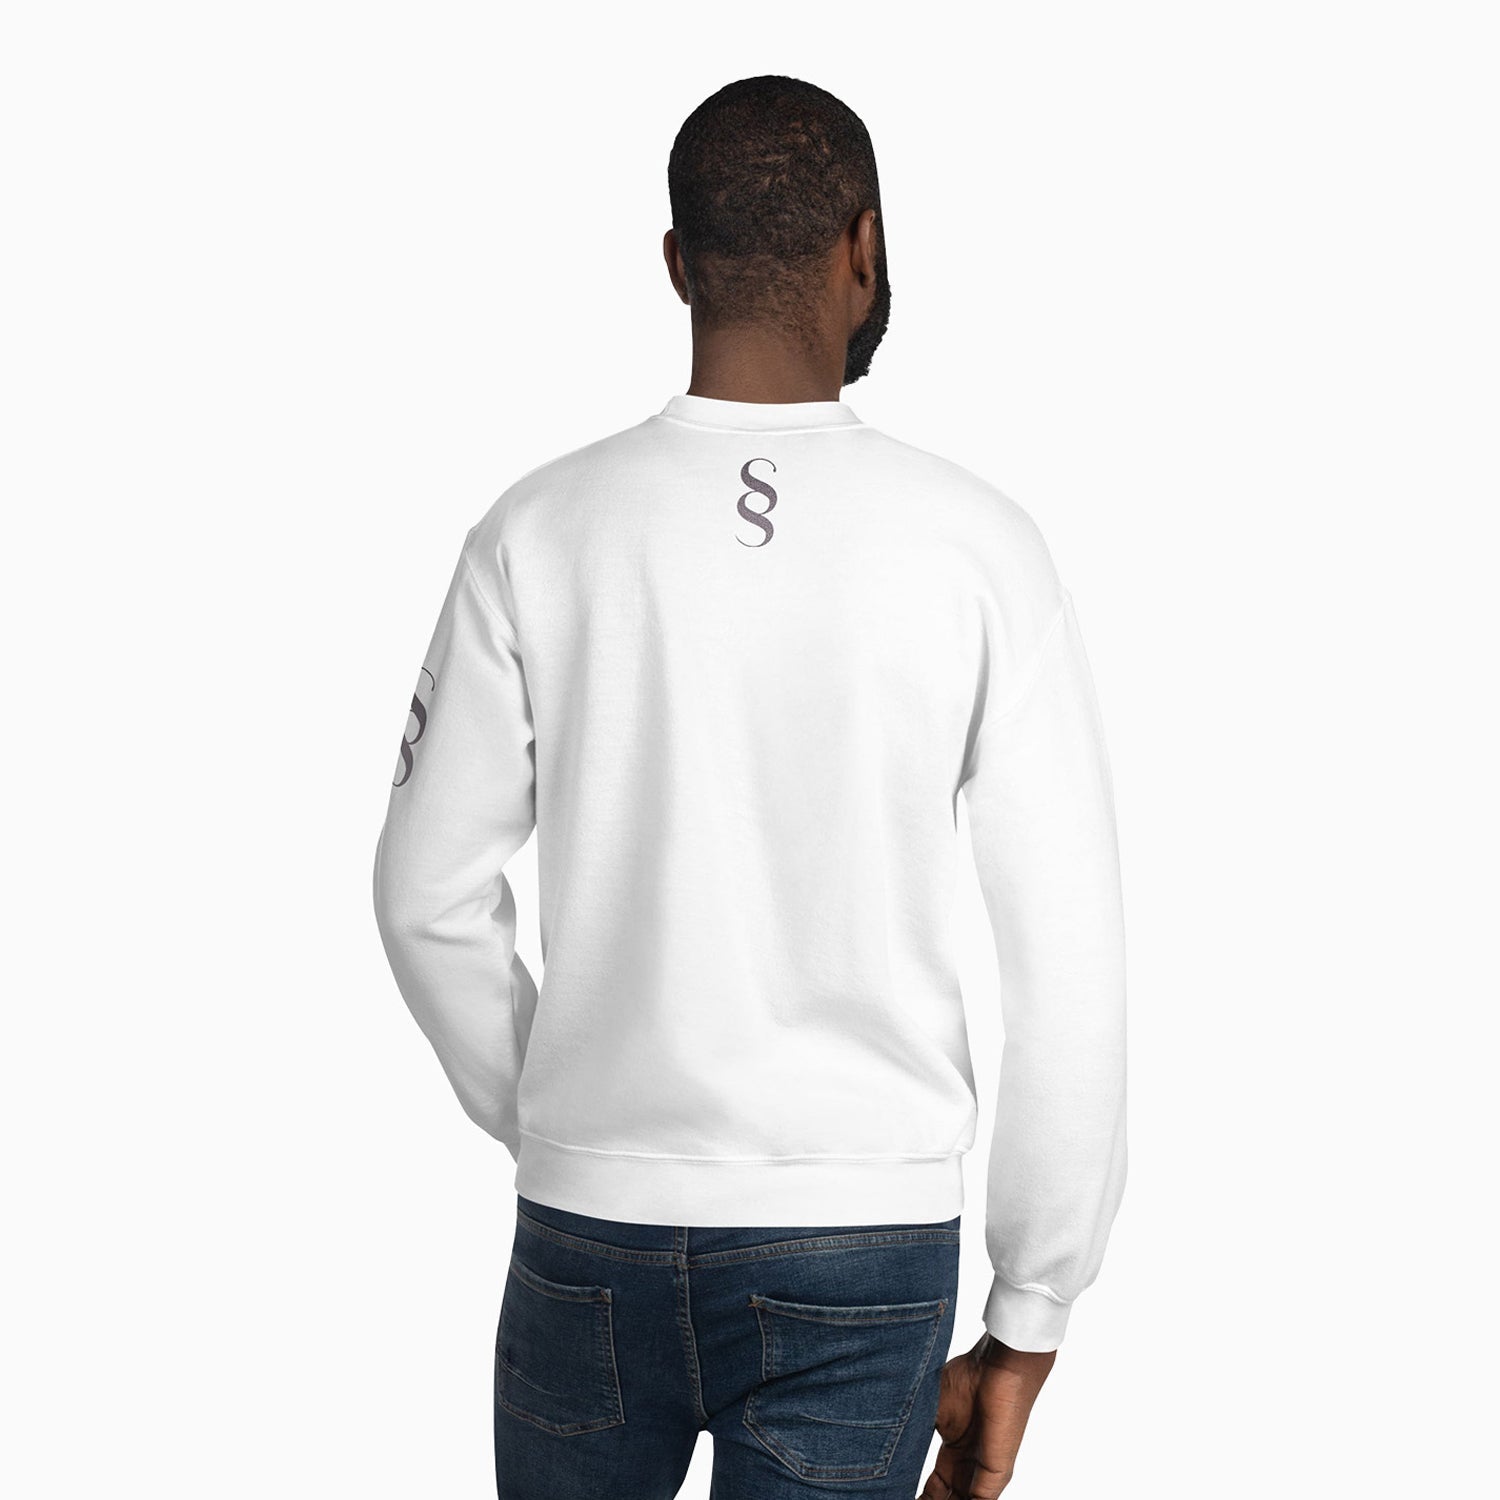 signature-design-printed-crew-neck-white-sweatshirt-for-men-sc111-100